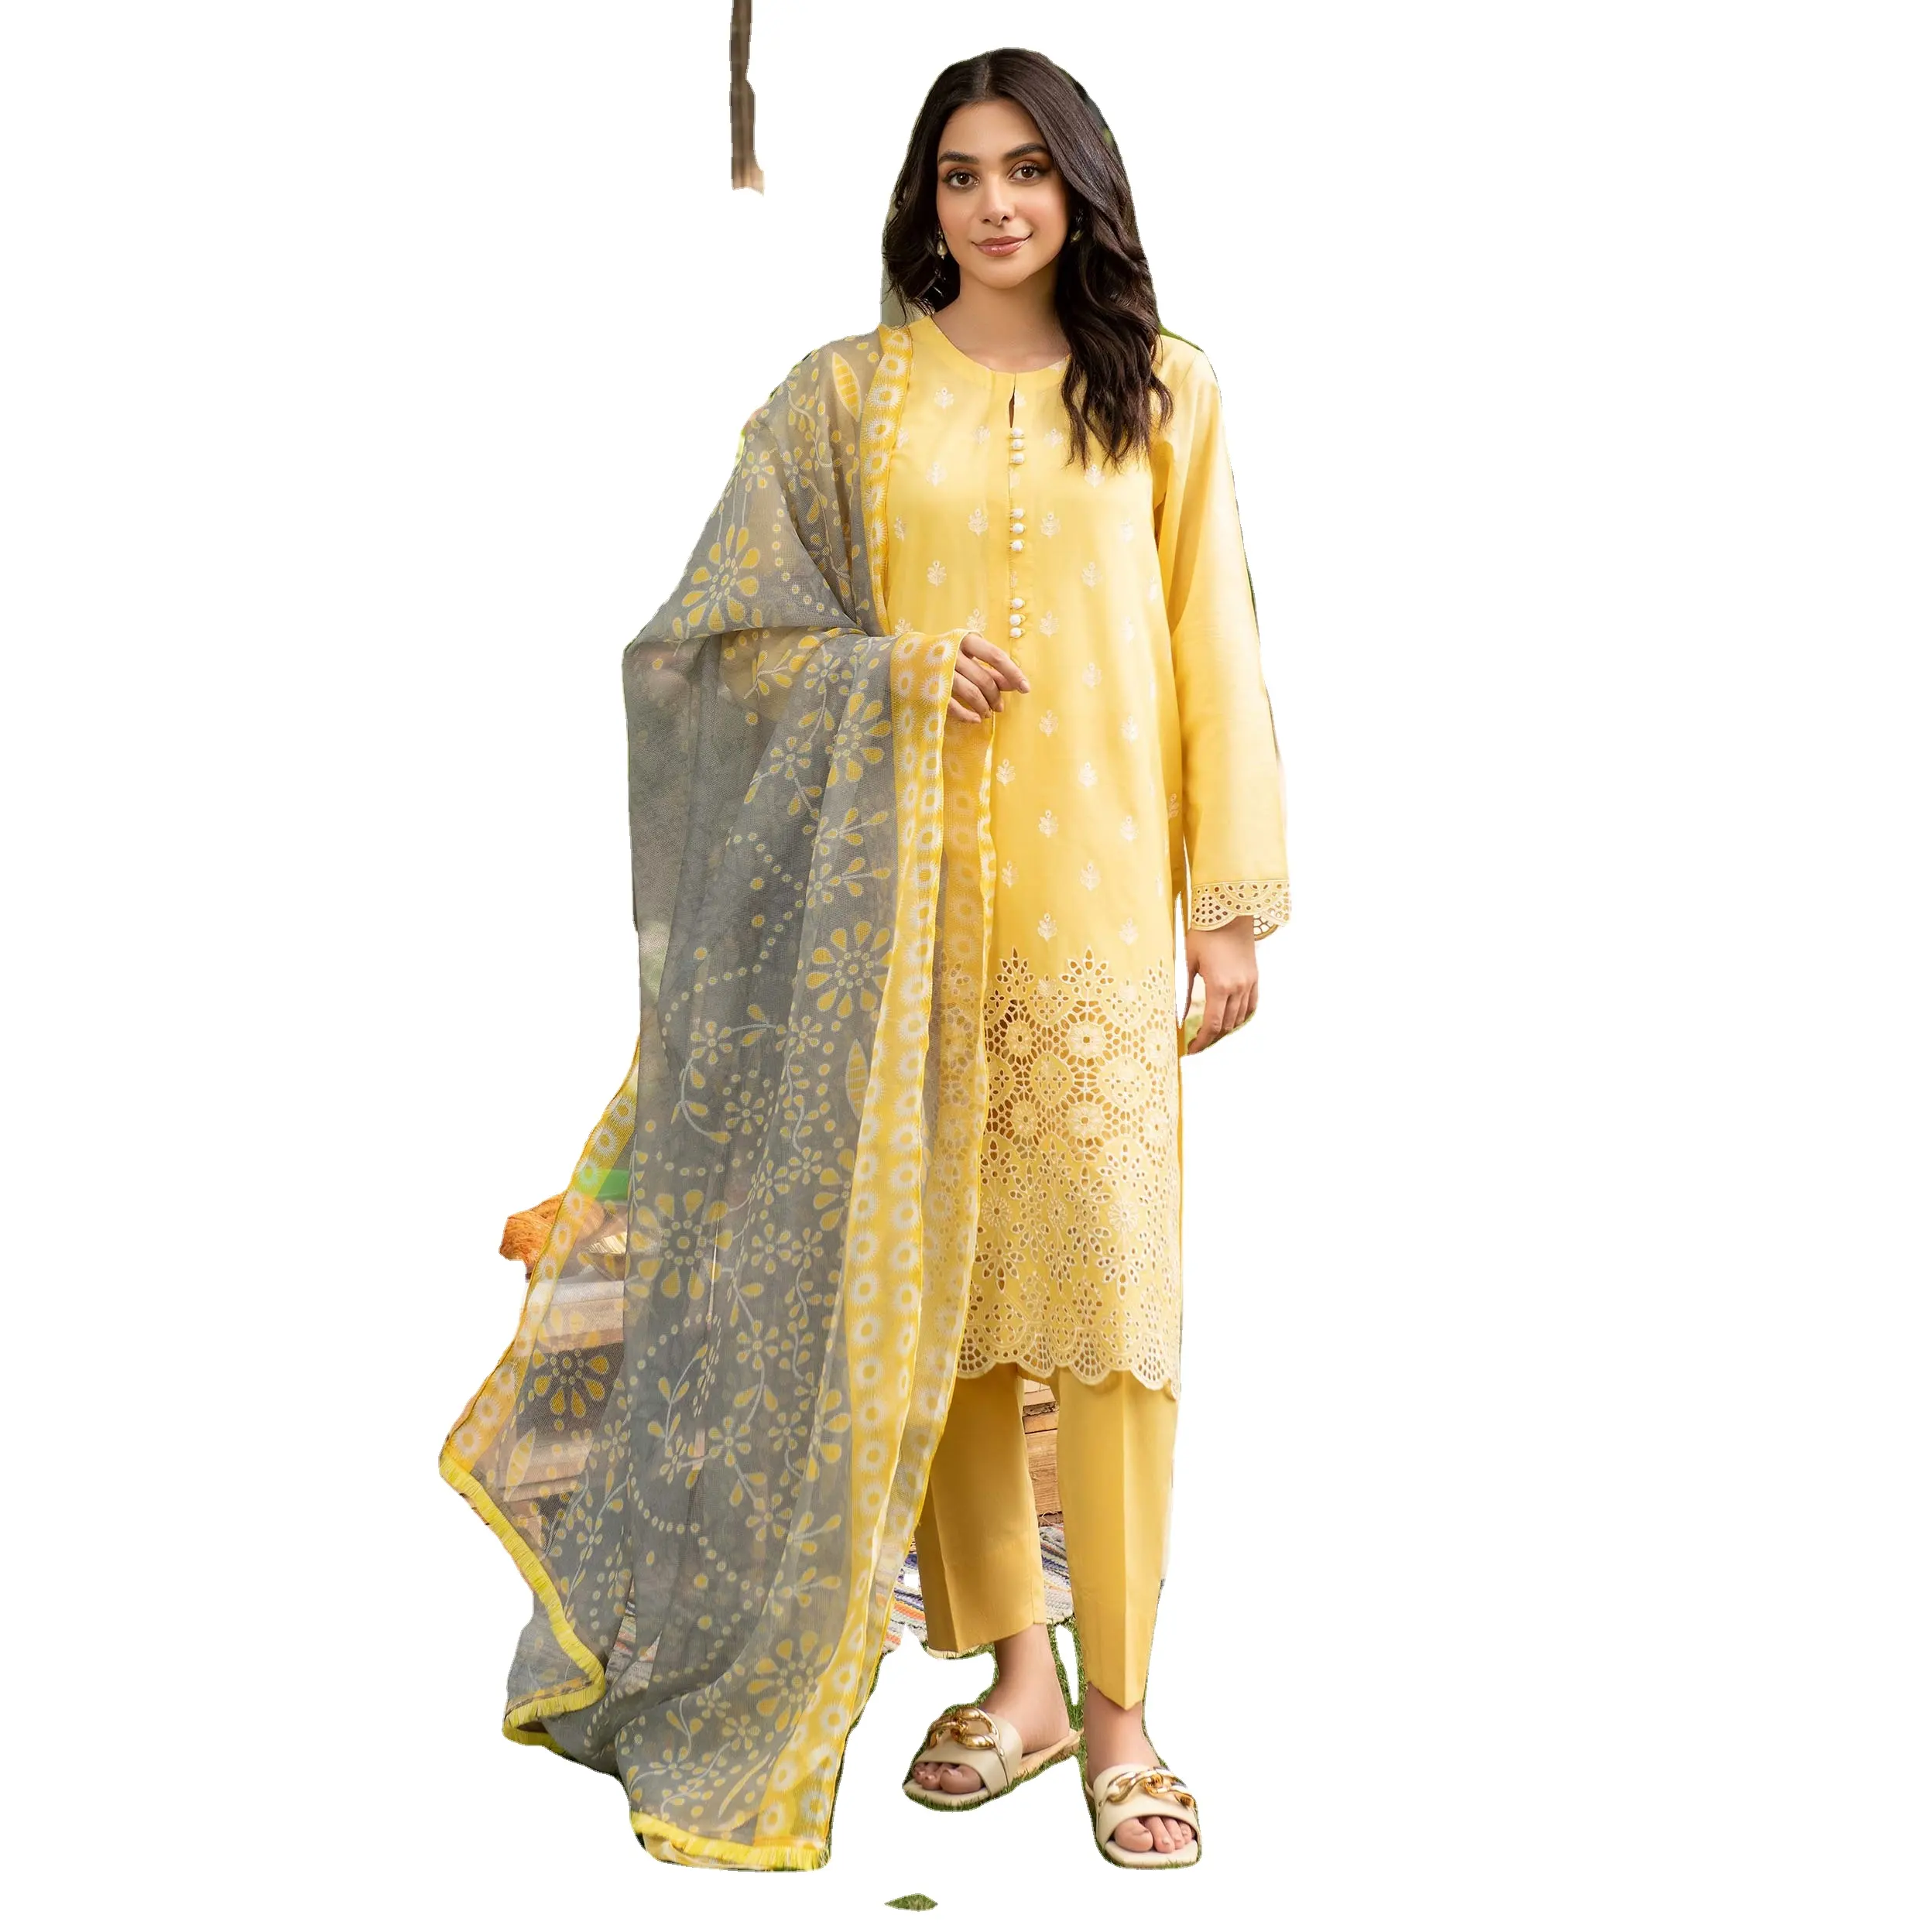 Pakaian tradisional wanita bordir setelan etnik wanita custom made premium cetakan rumput pakaian lengan panjang warna kuning